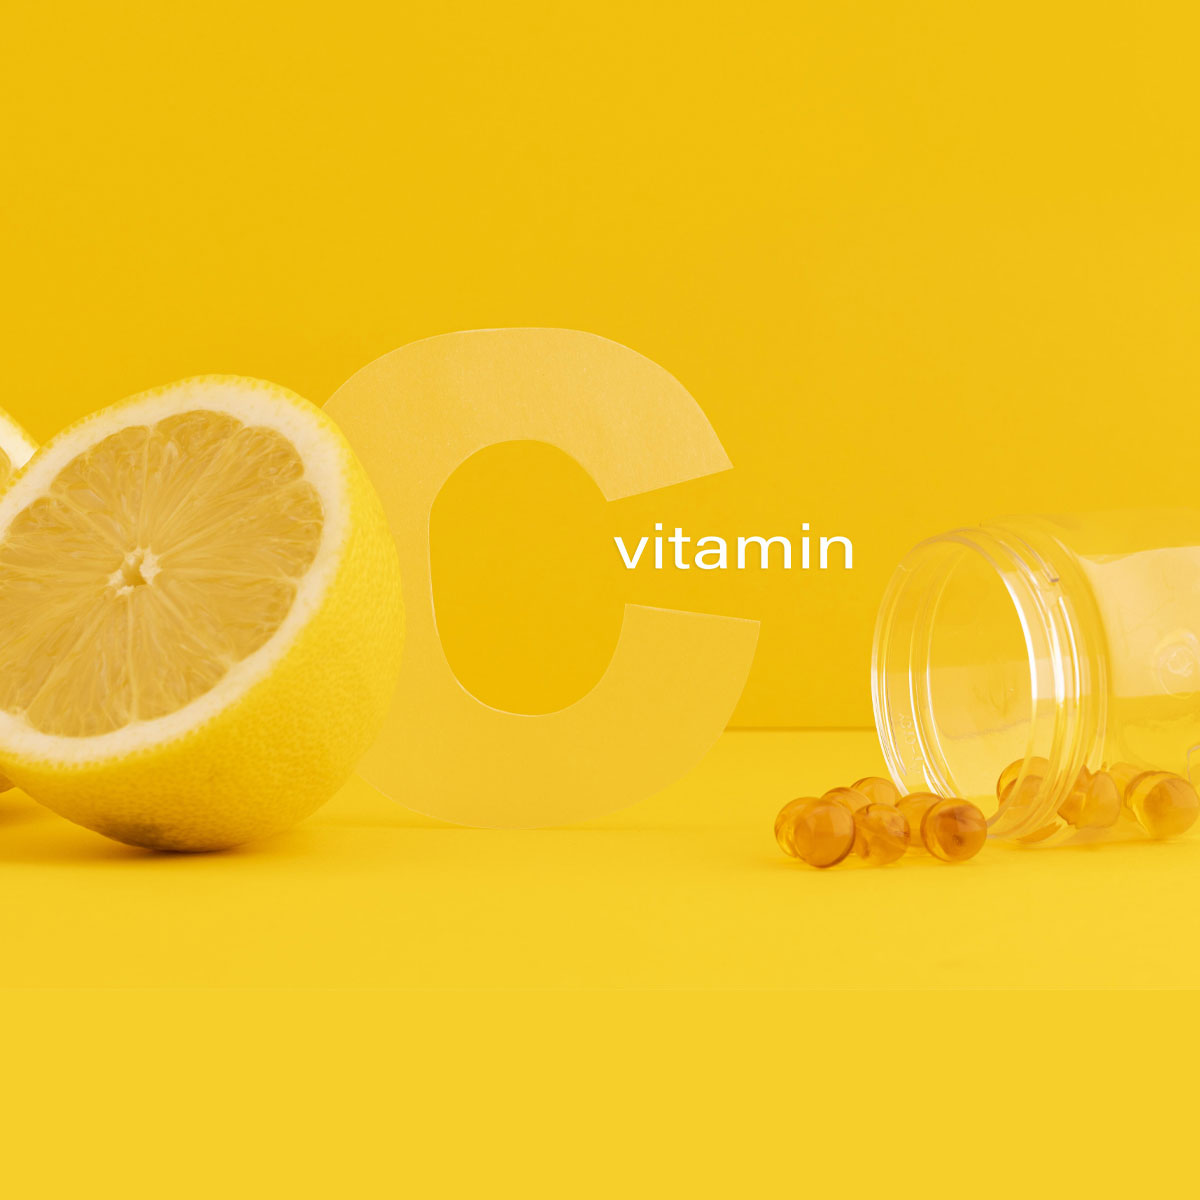 Vitamina C: Proprietà e Benefici del Celebre Nutriente Essenziale